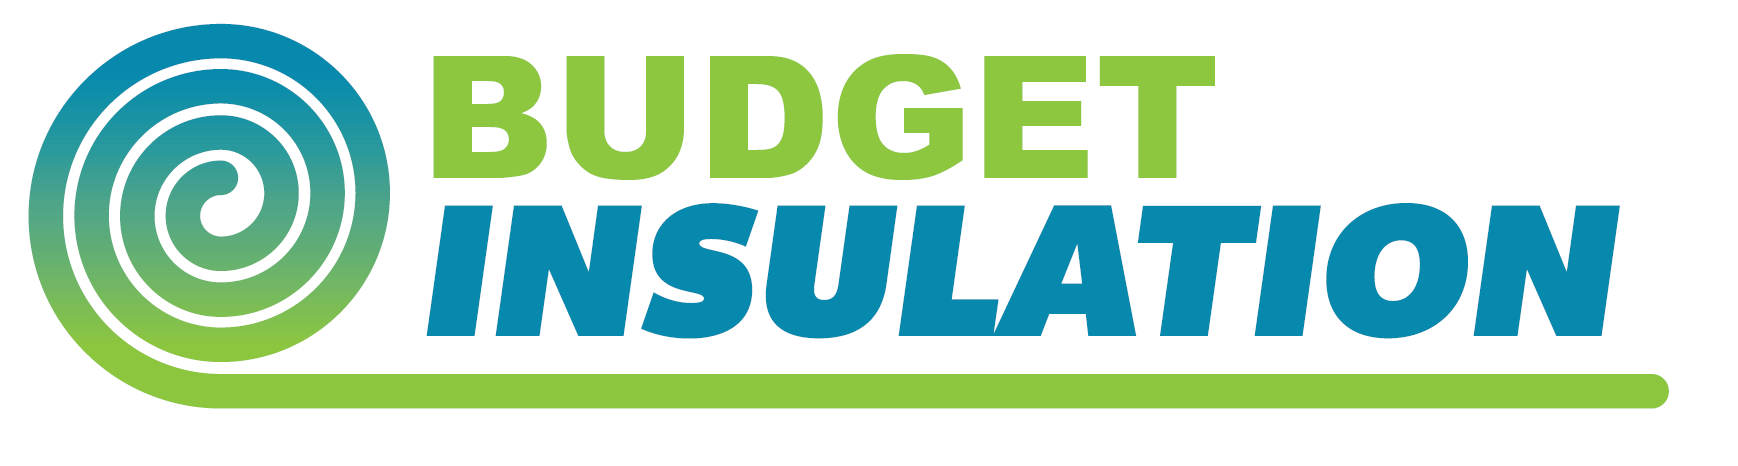 Budget Insulation Logo